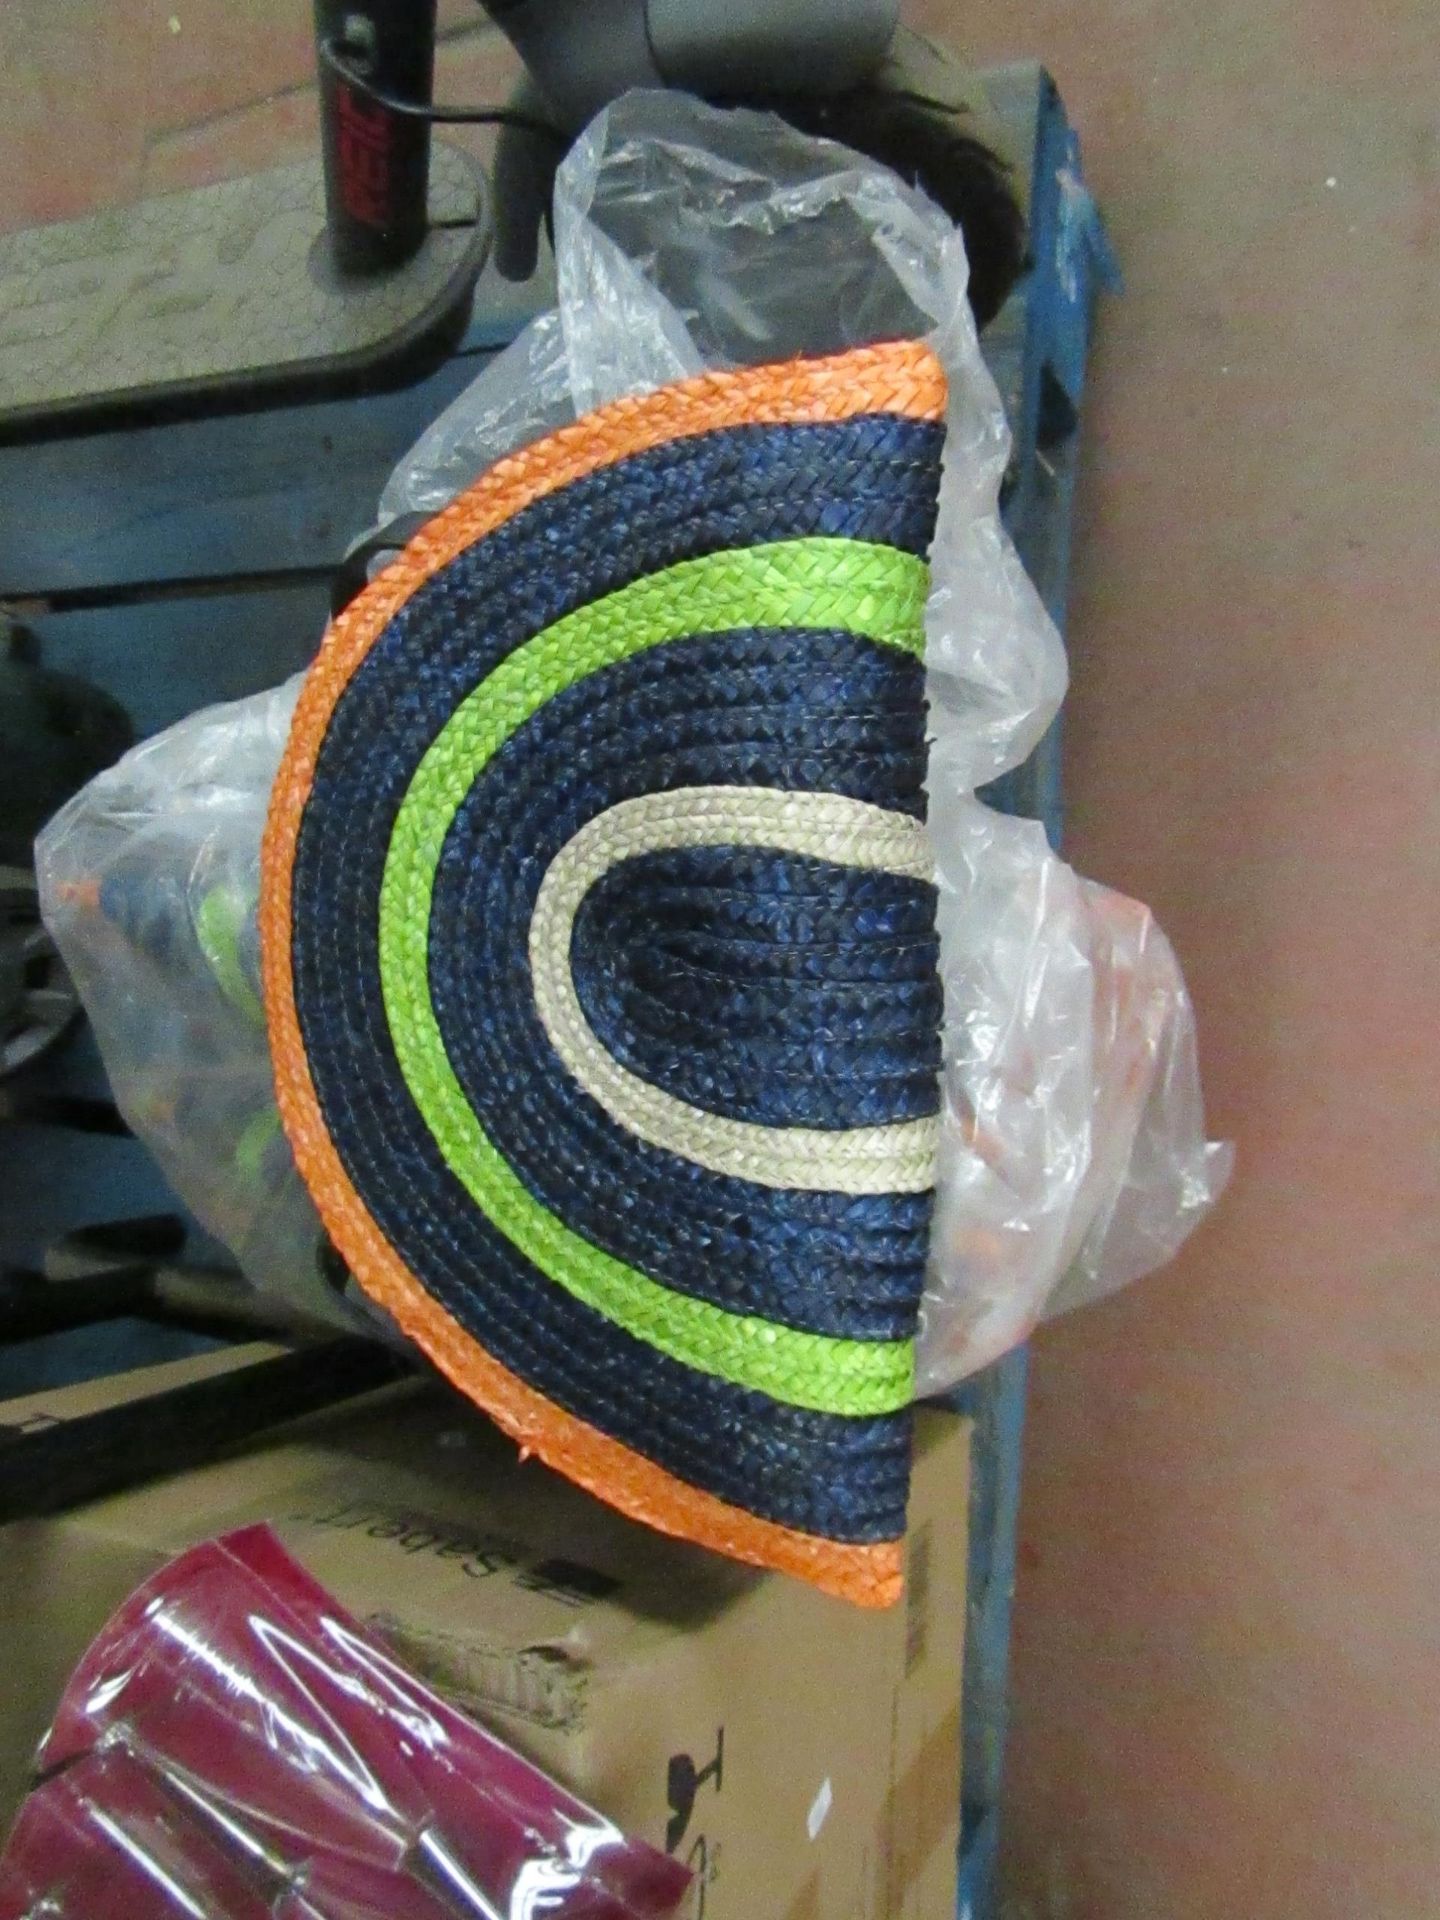 2x Looli - Sombrero Bag (Multi-Coloured) - Unused With Original Tags.